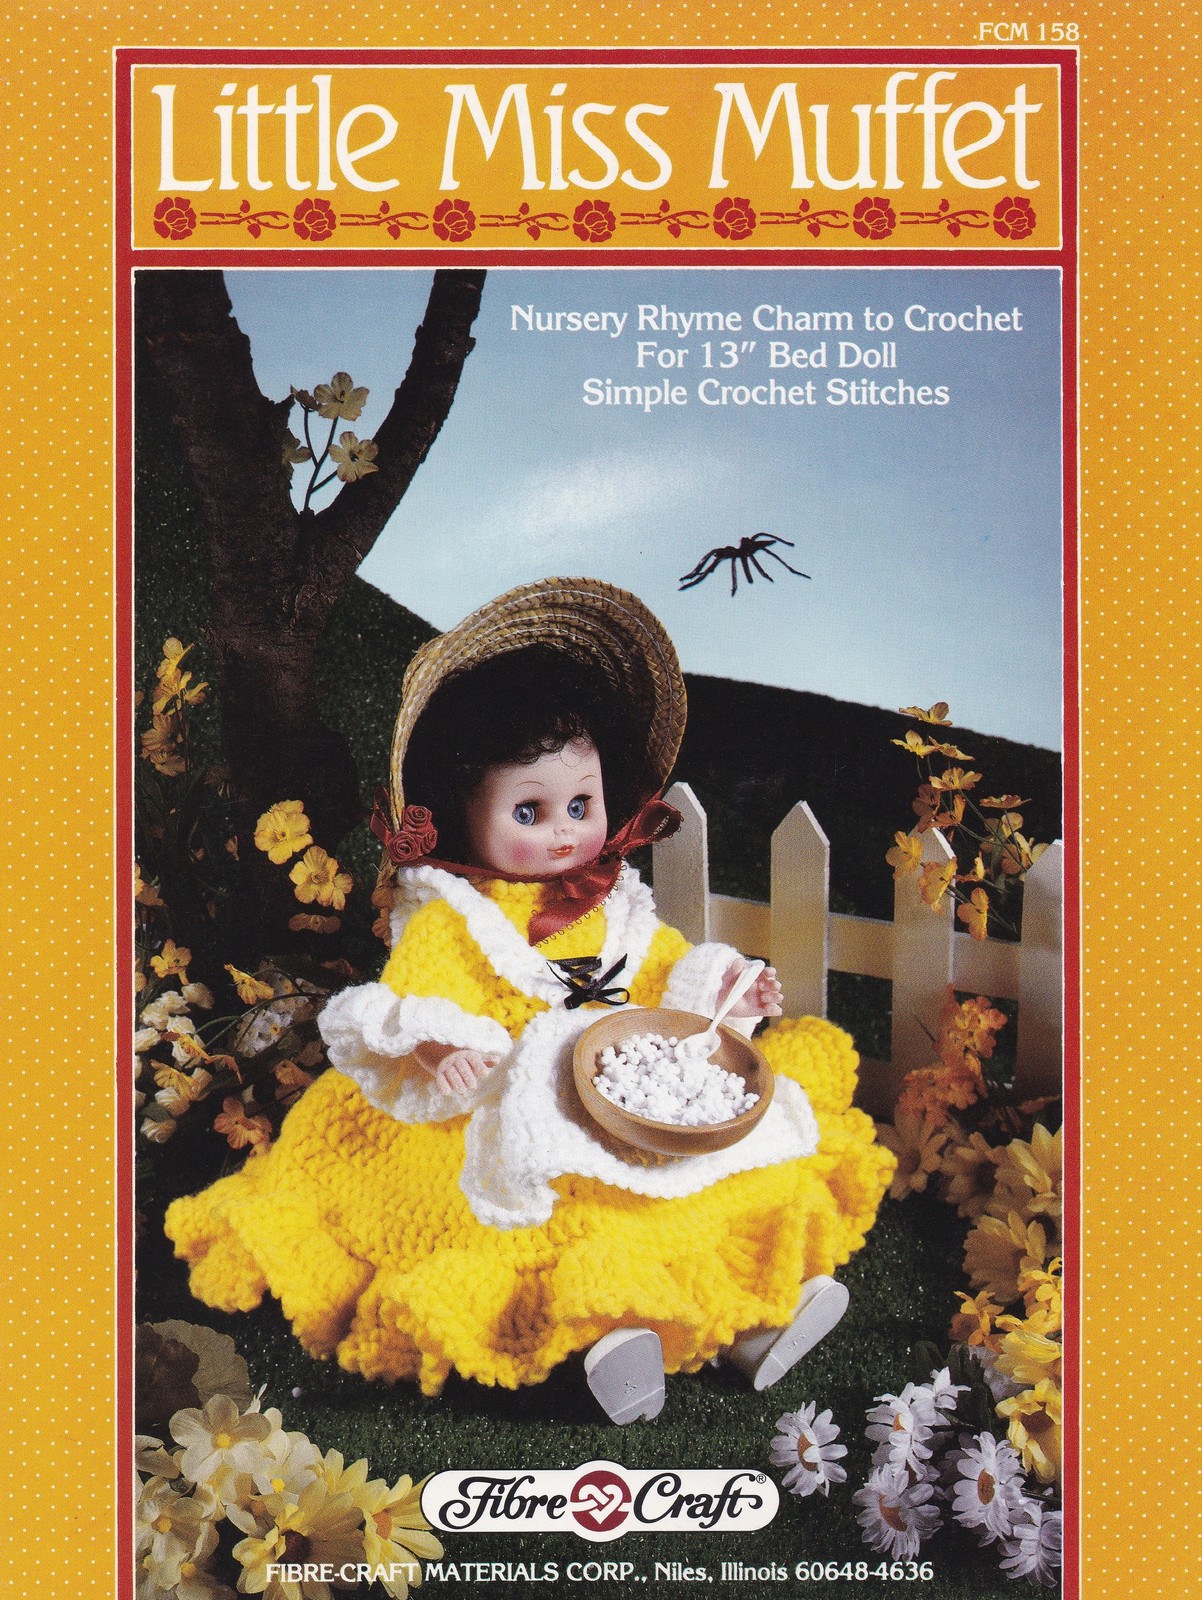 Little Miss Muffet, Fibre Craft Doll Clothes Crochet Pattern Booklet FCM158 - $3.95